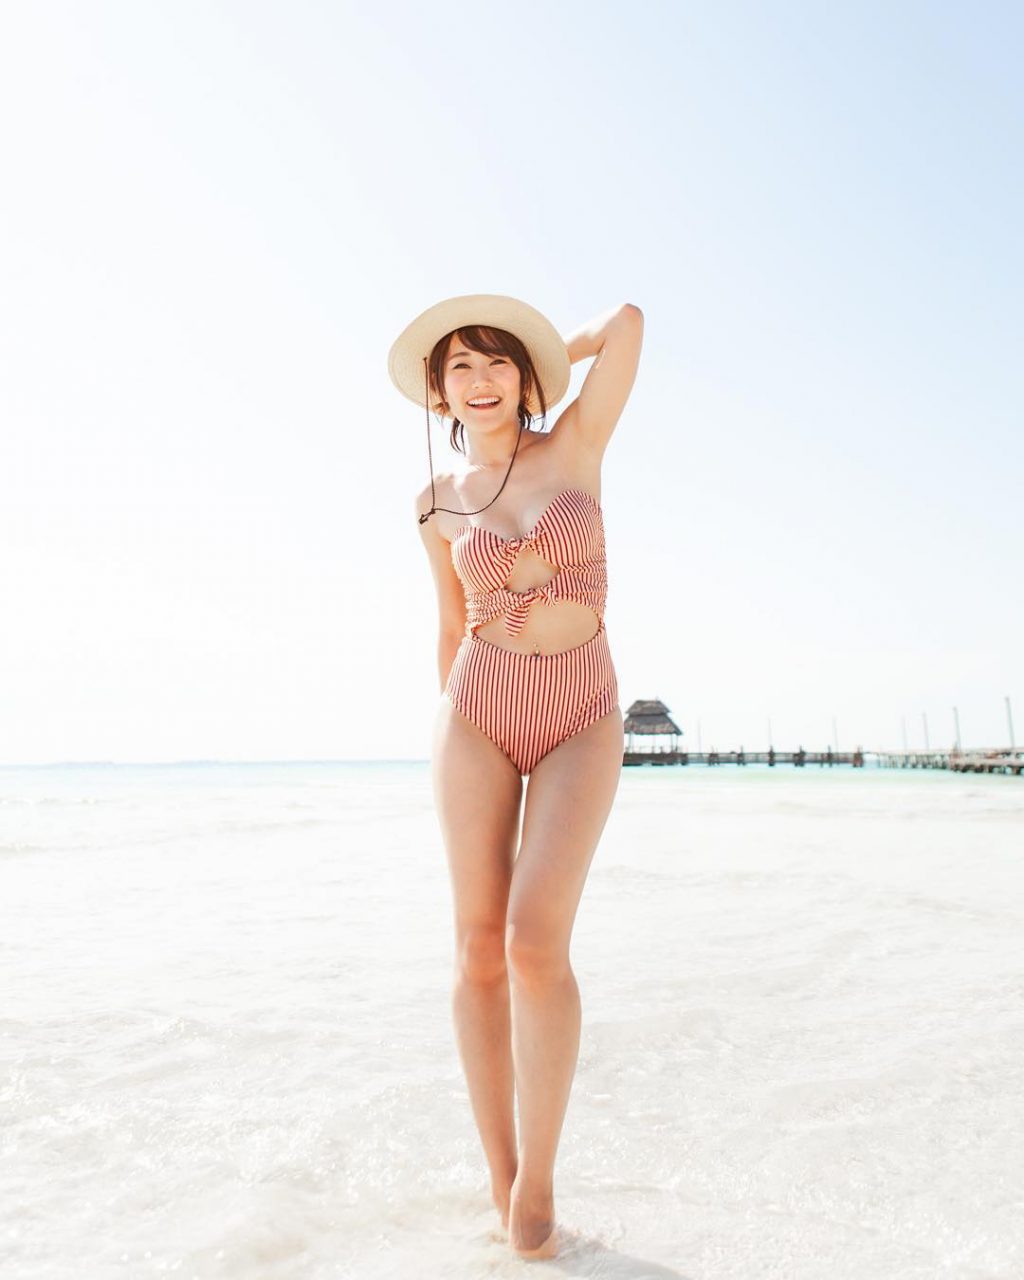 Karen Fukuhara Sexy (15 Photos)